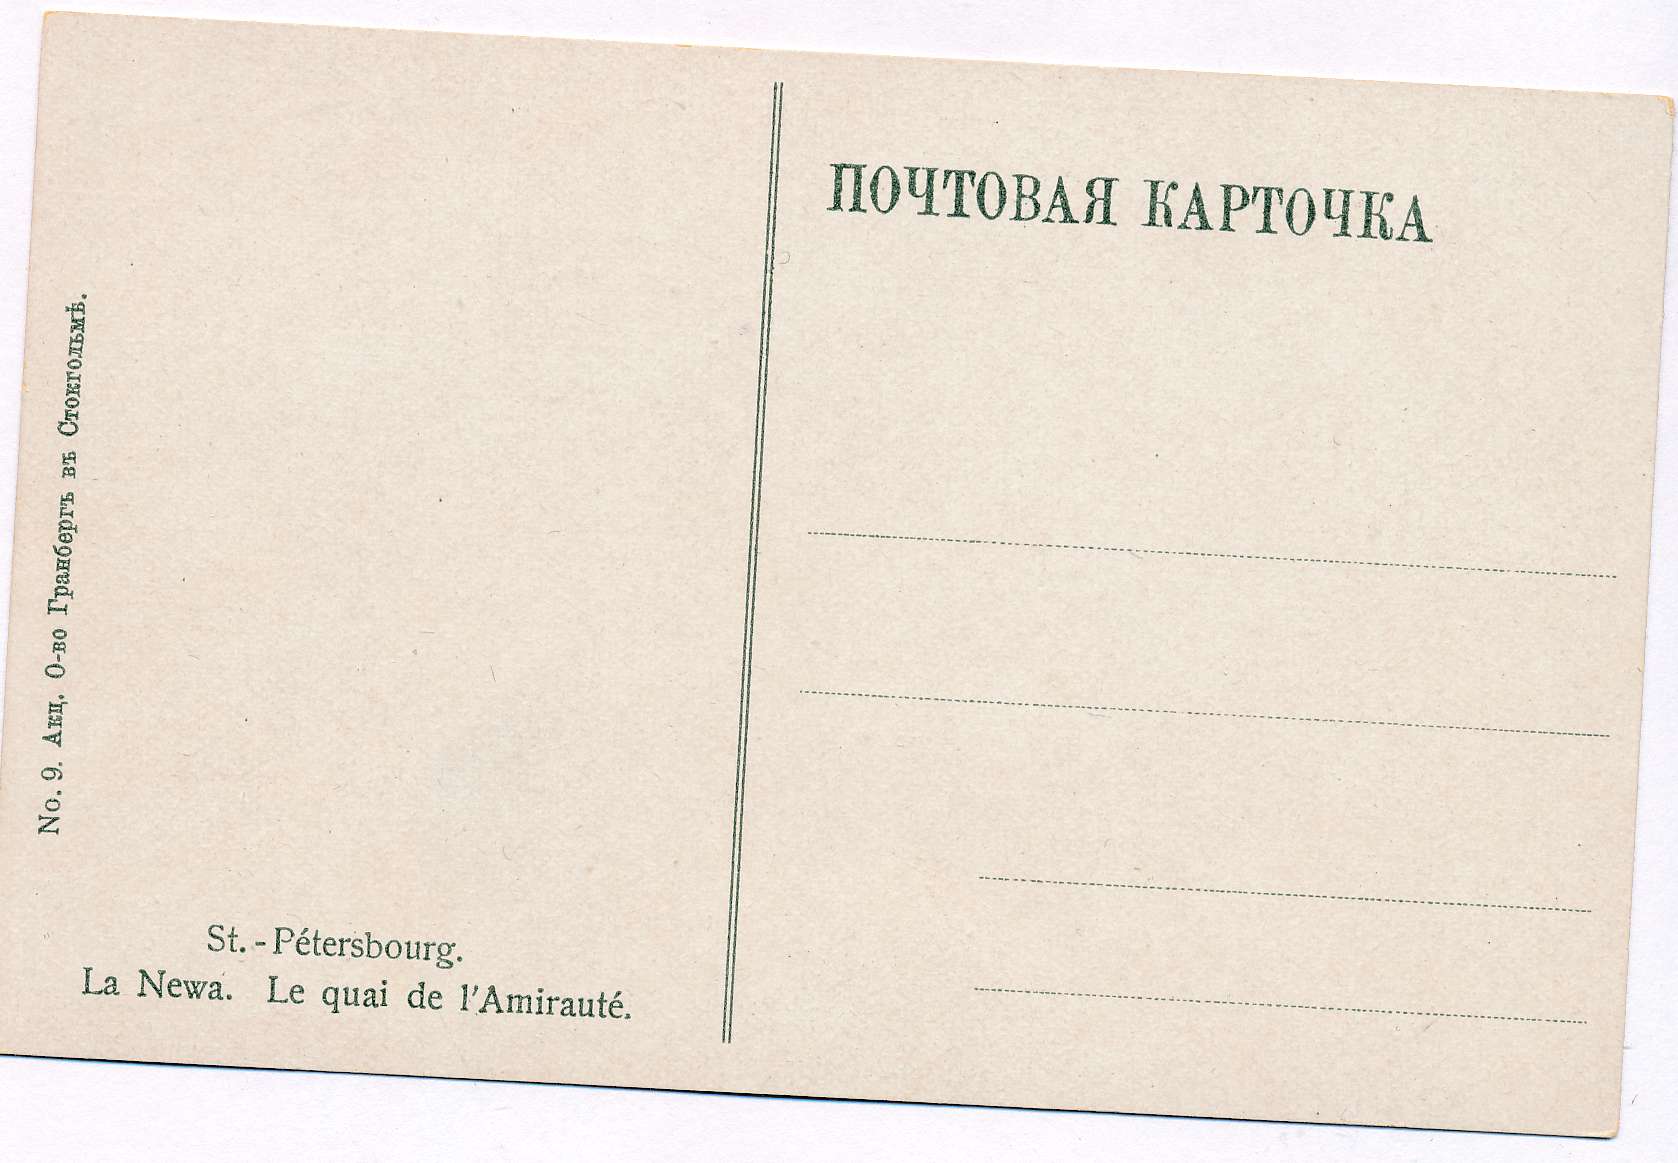 Формат почтовой открытки